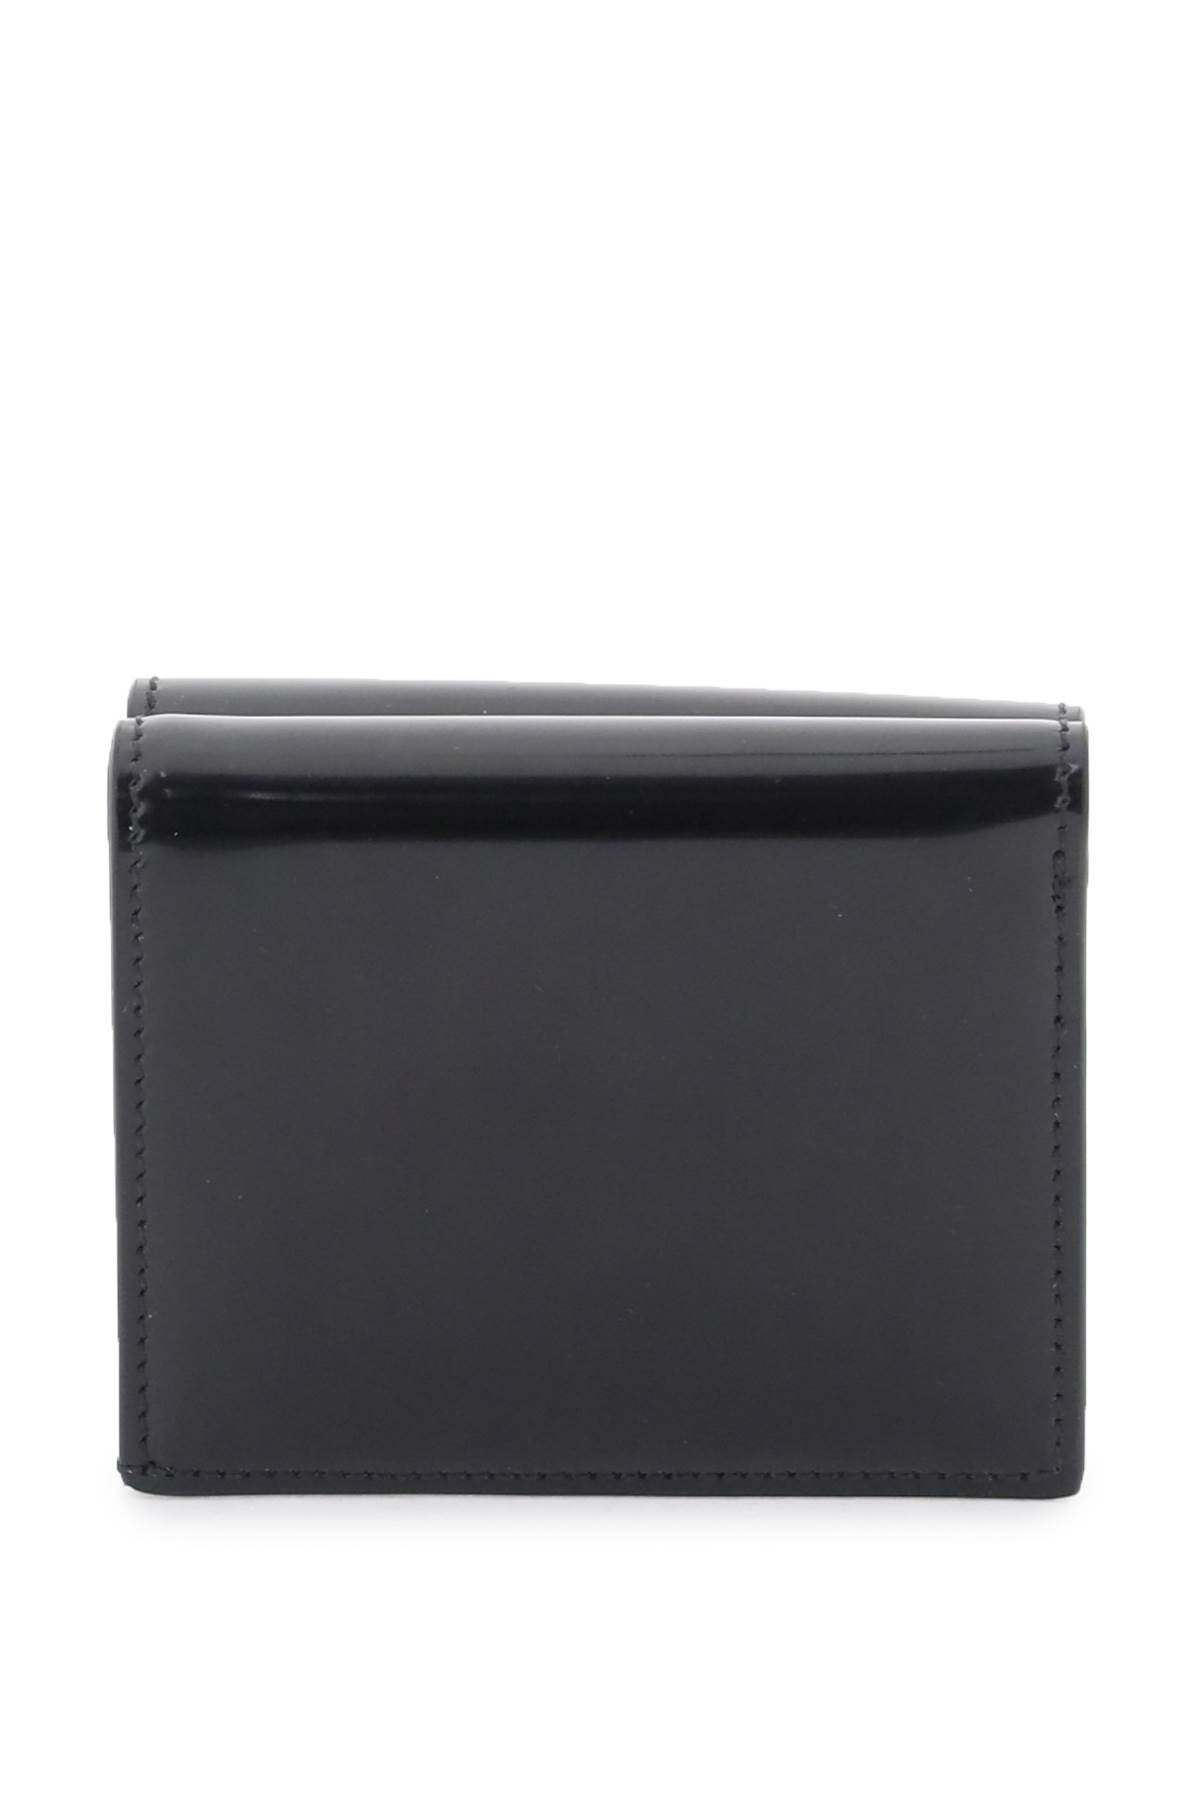 Black Leather Wallet with Gancini Hook Closure - محفظة نسائية لامعة مع إغلاق سلسلة جانشيني باللون الذهبي